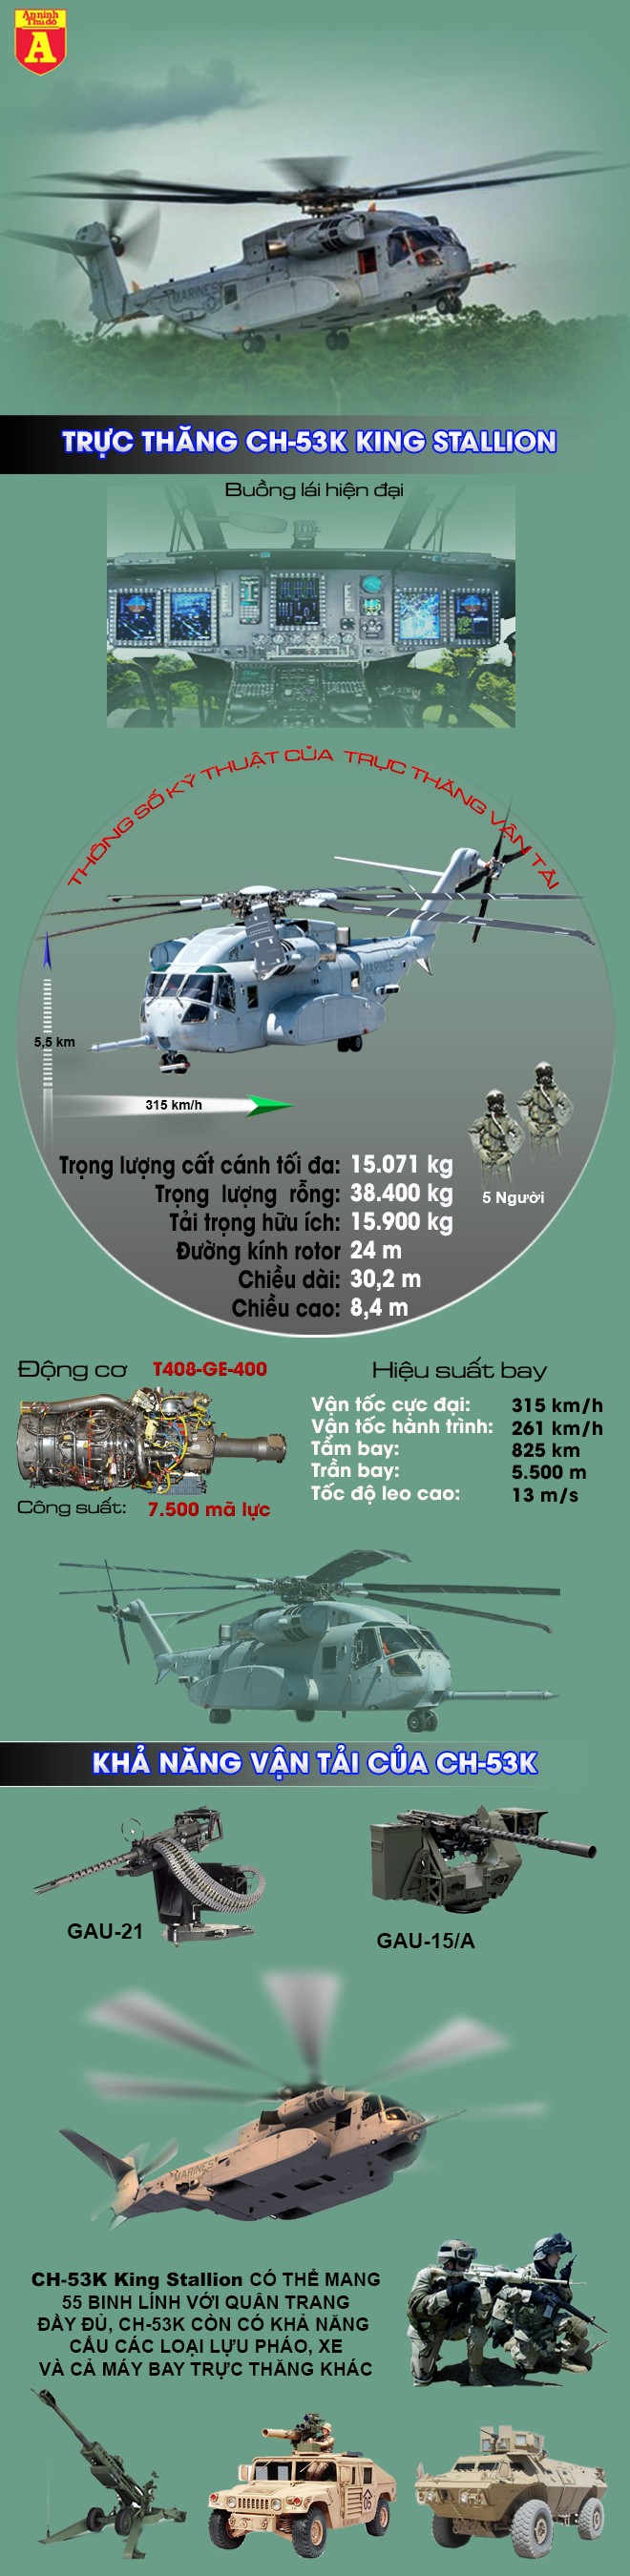 [Infographic] Đắt hơn tiêm kích F-35, siêu trực thăng khổng lồ CH-53K của Mỹ có gì? ảnh 2